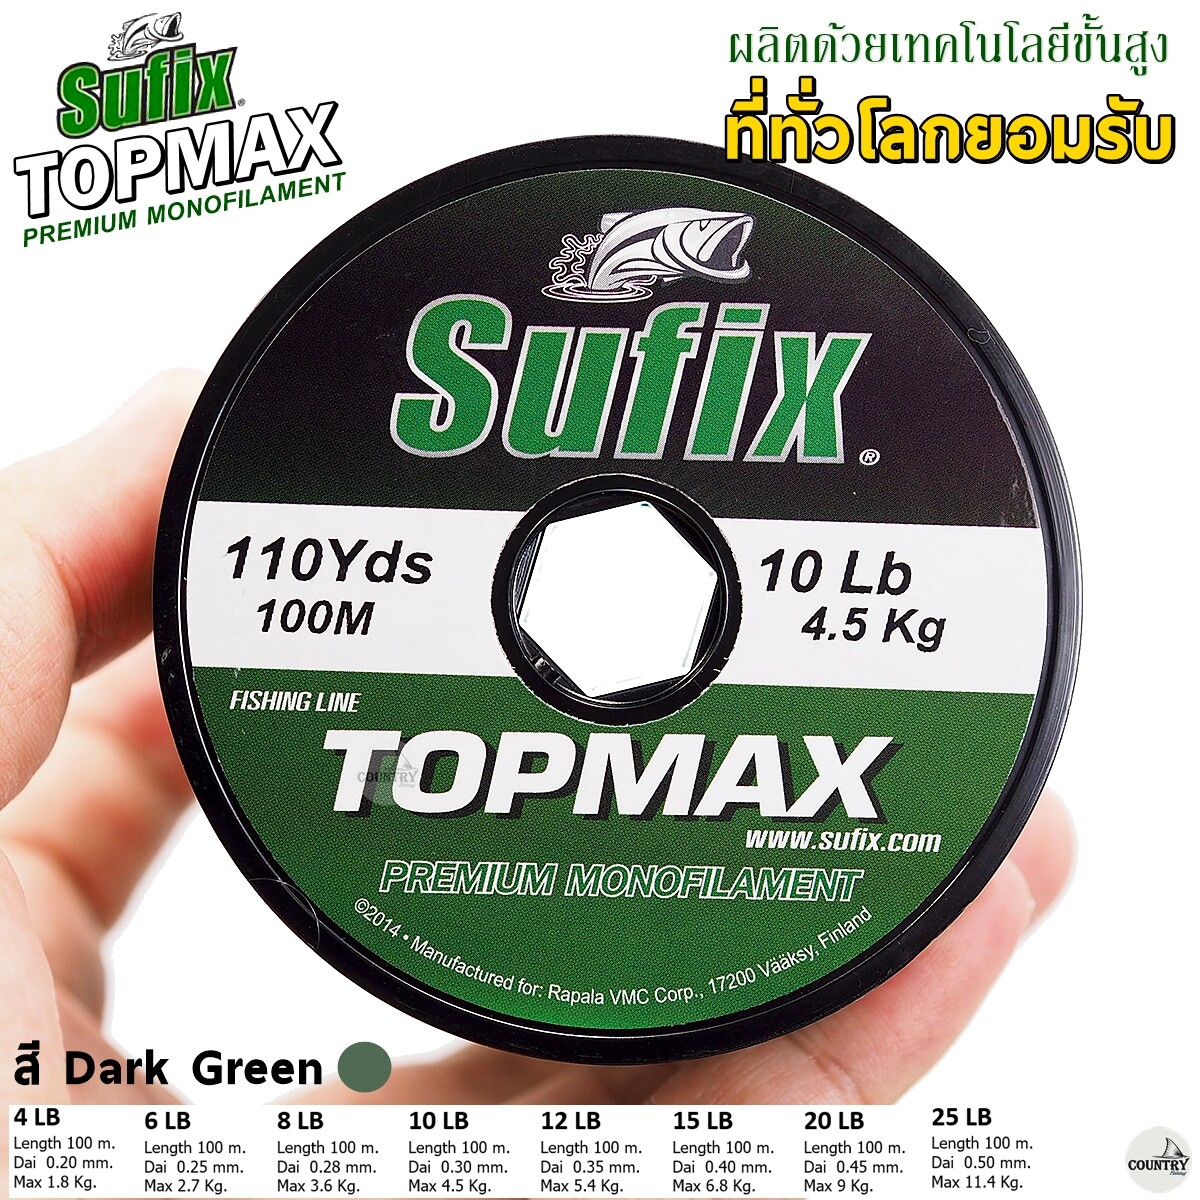 สายเอ็น Sufix Topmax Premium Monofilament 100M สายเอ็นซูฟิก ท็อปแม็กซ์  พรีเมี่ยม สีเขียวเข้ม สายเอ็น ม้วนต่อ